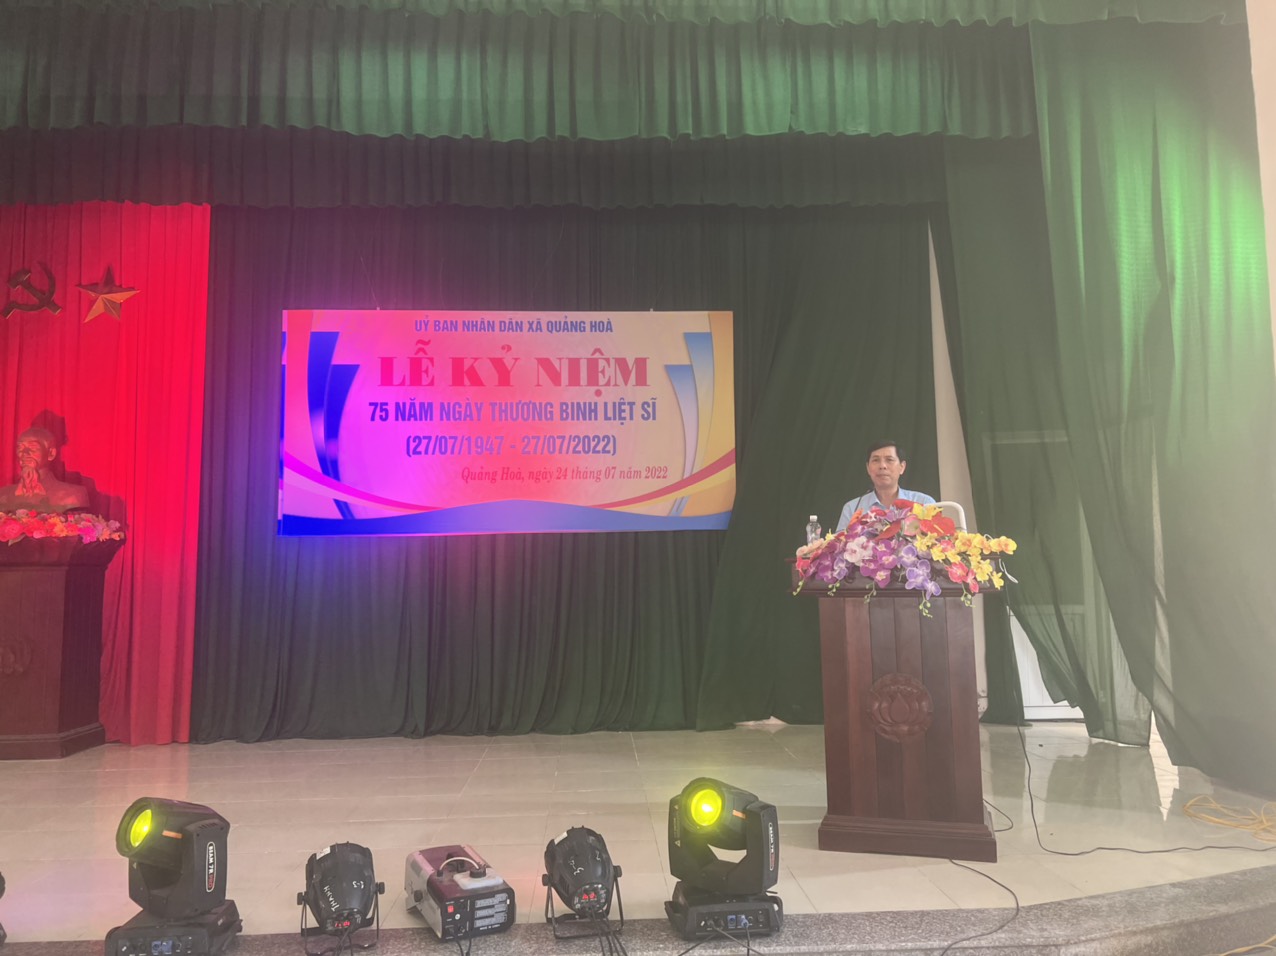 Xã Quảng Hòa tổ chức lễ kỷ niệm 75 năm ngày thương binh liệt sỹ